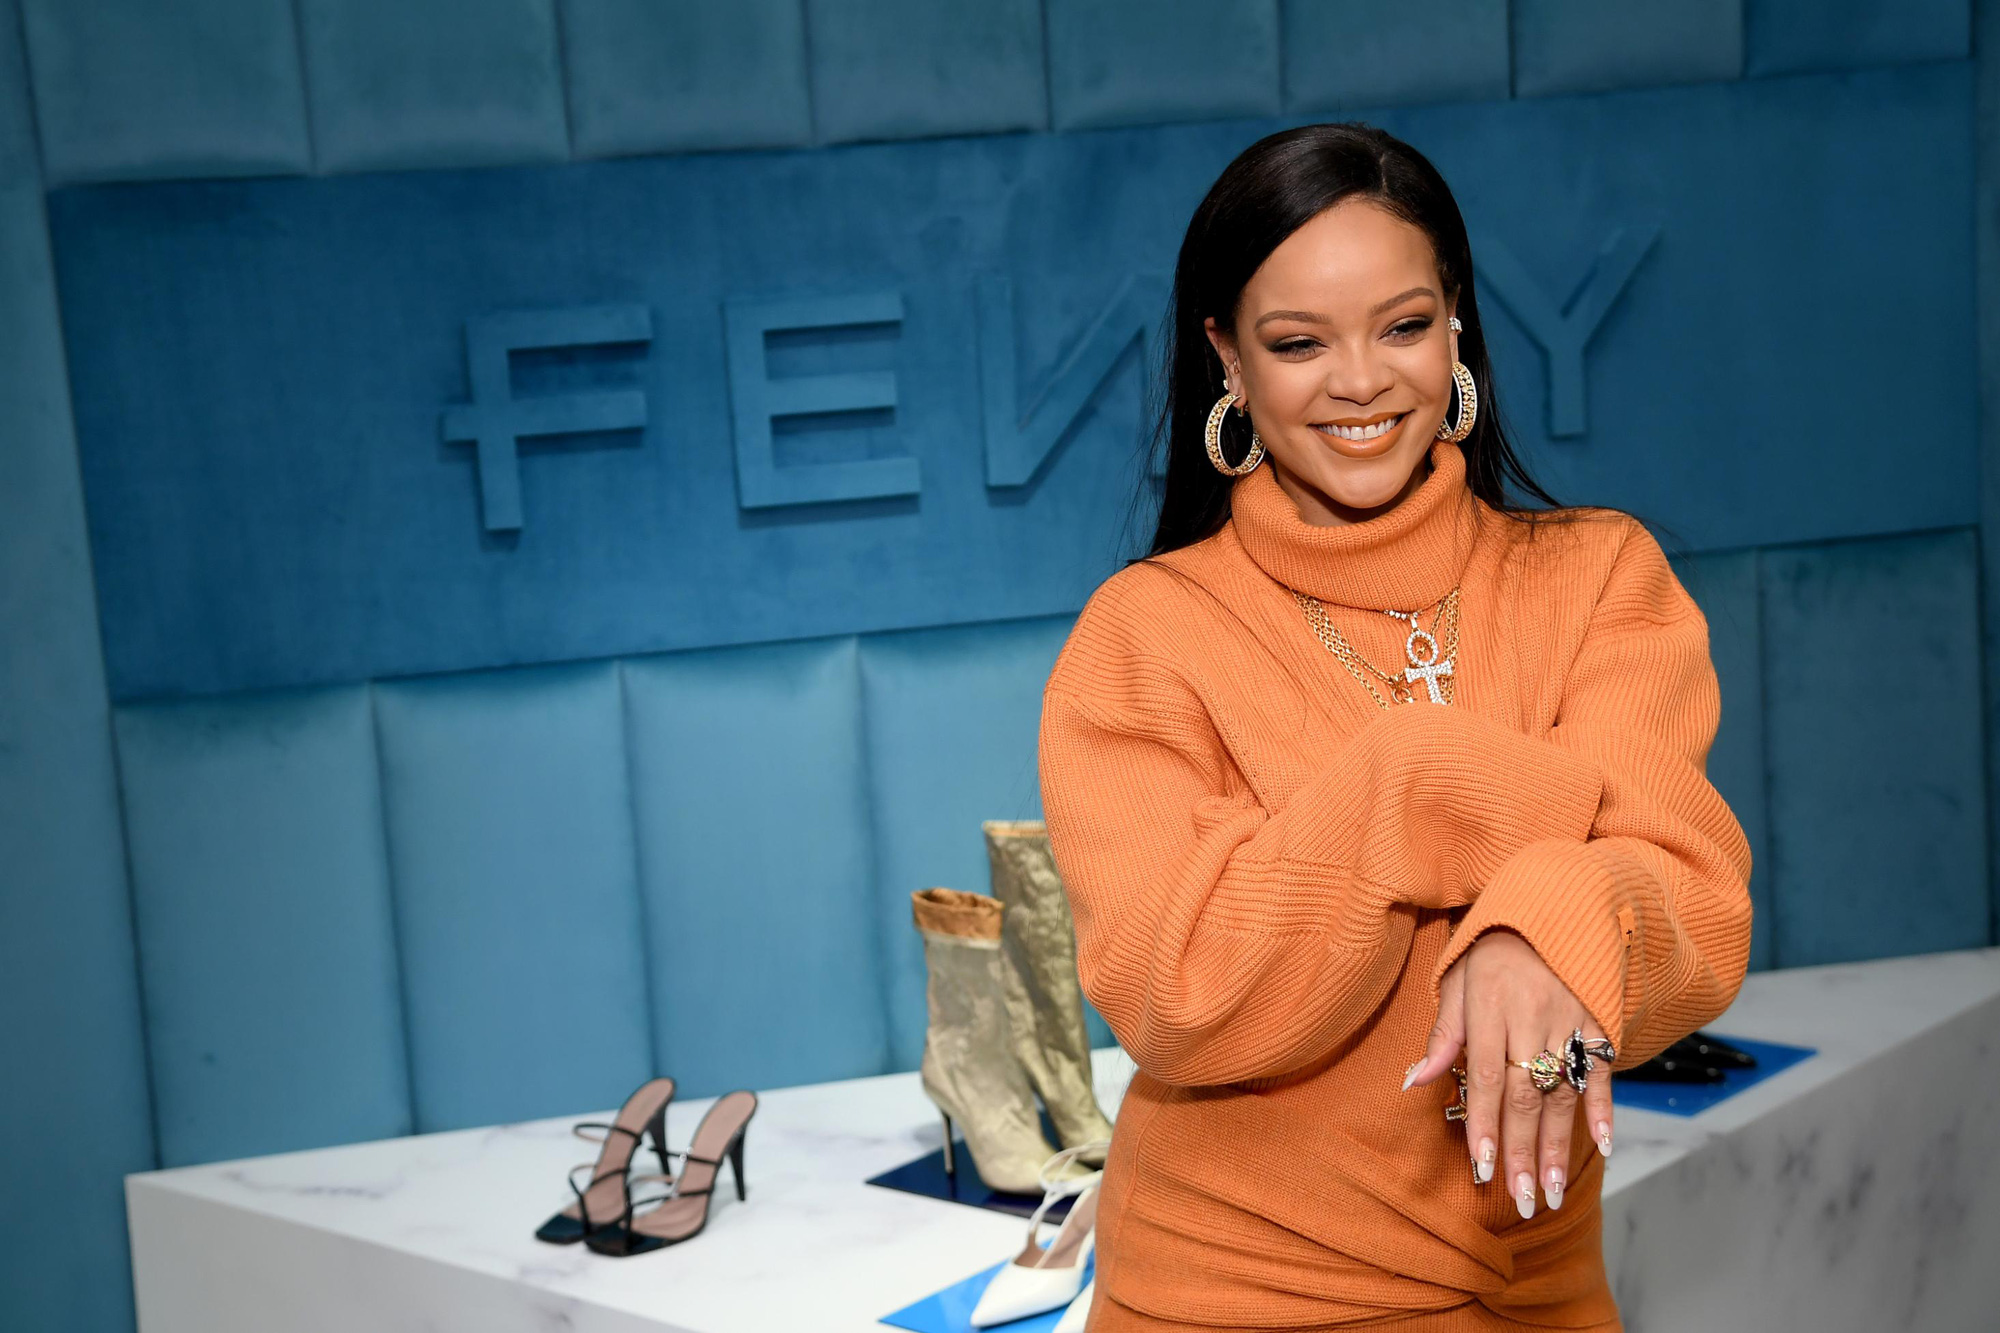 Tỷ phú đô la ở tuổi 33 - Rihanna: Tuổi thơ cùng cực, vụt sáng thành sao nhưng đi hát bao năm cũng không kiếm khủng bằng buôn mỹ phẩm, đồ lót và tậu bất động sản - Ảnh 10.